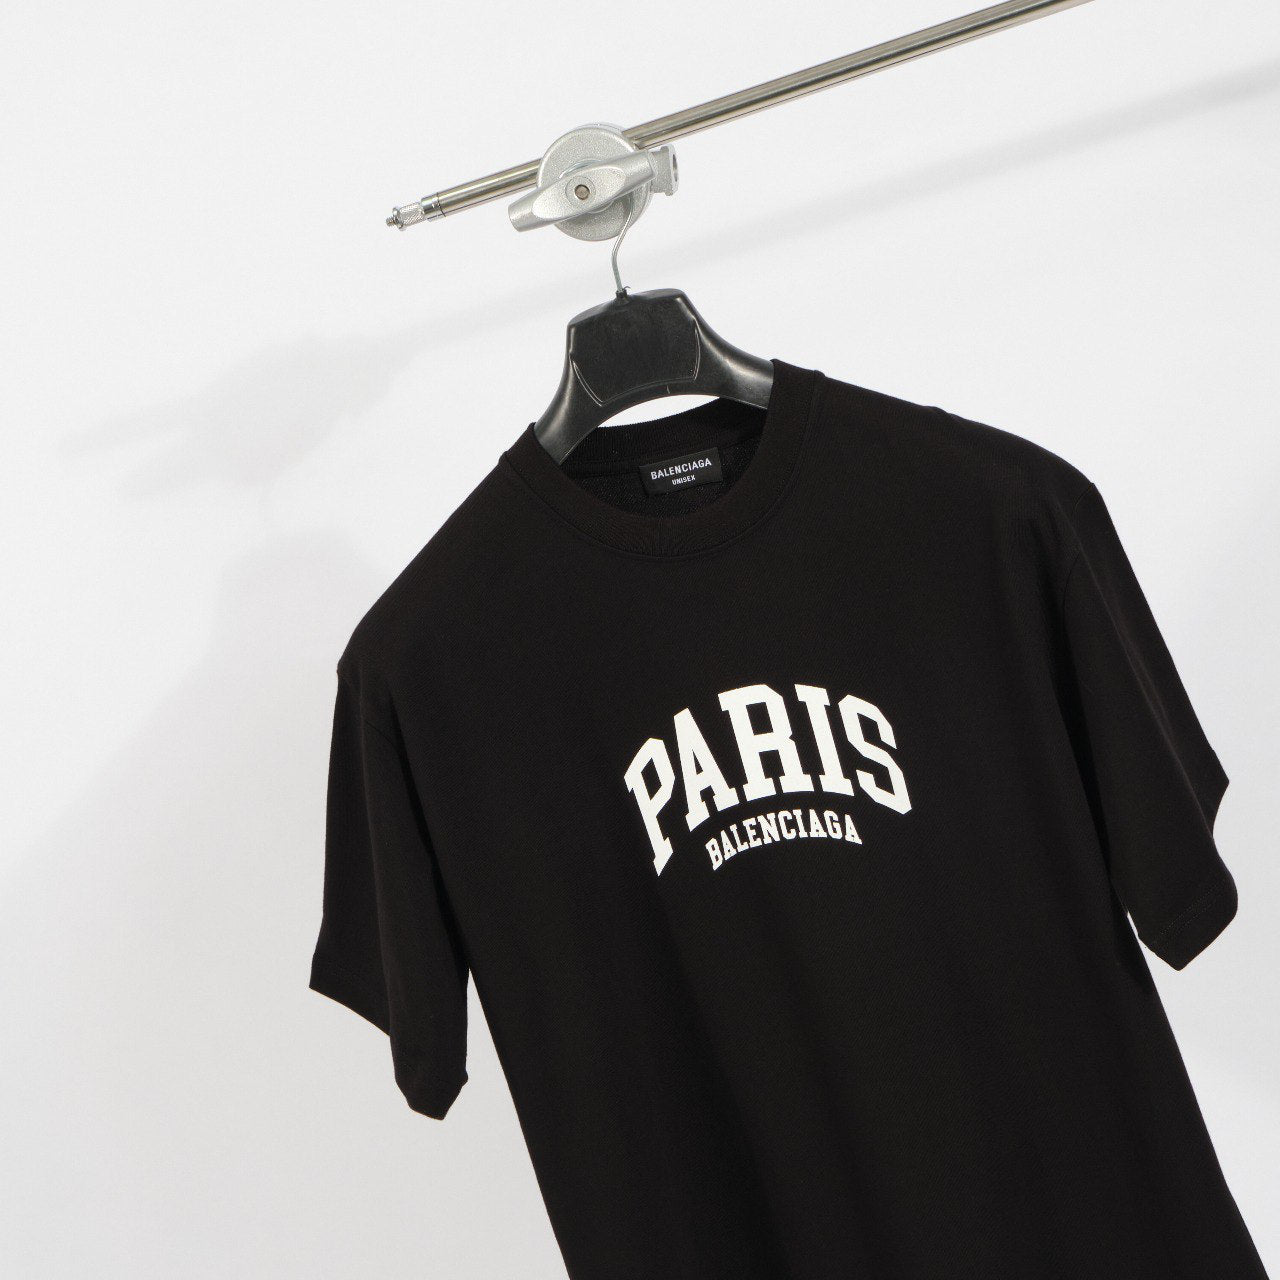 Balenciaga Paris logo cotton T-shirt Black